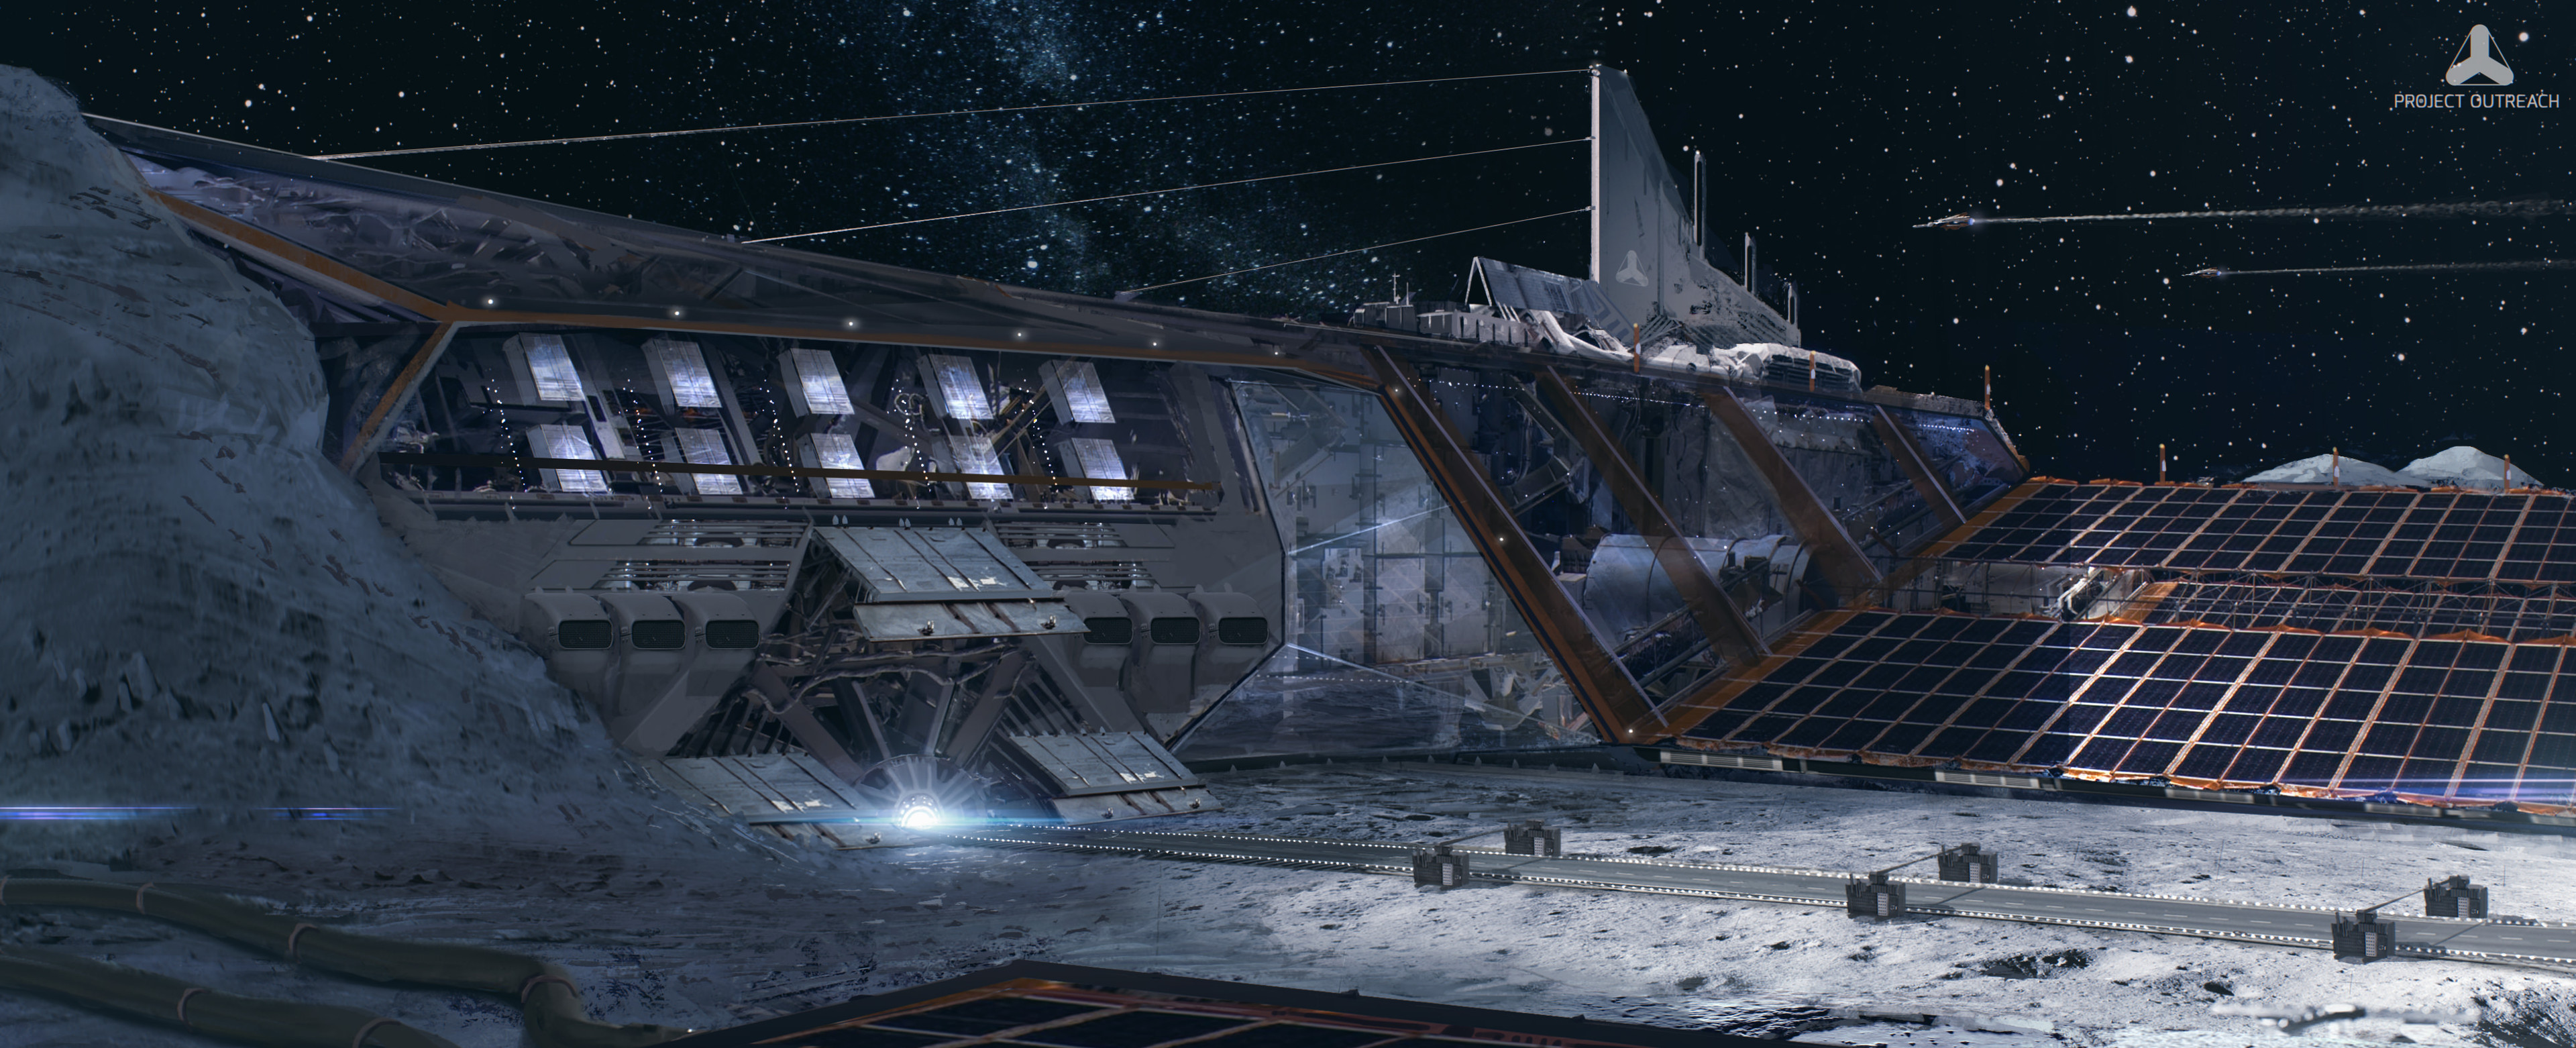 Лунная база 2020. Ноев Ковчег космический корабль. Лунная станция концепт. Лунная база будущего концепт арт. Космическая база.